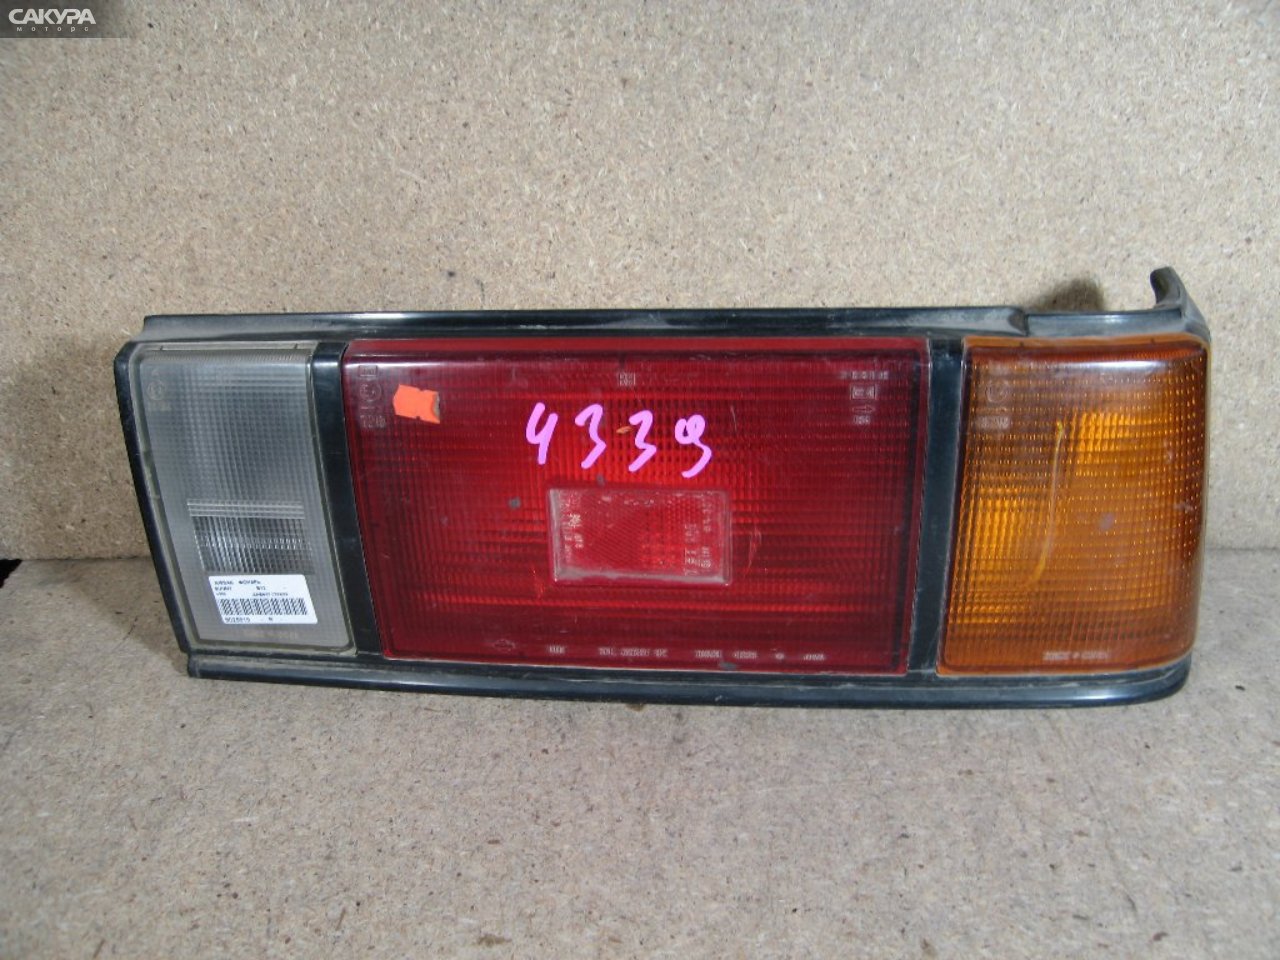 Фонарь стоп-сигнала правый Nissan Sunny B12 4339: купить в Сакура Абакан.